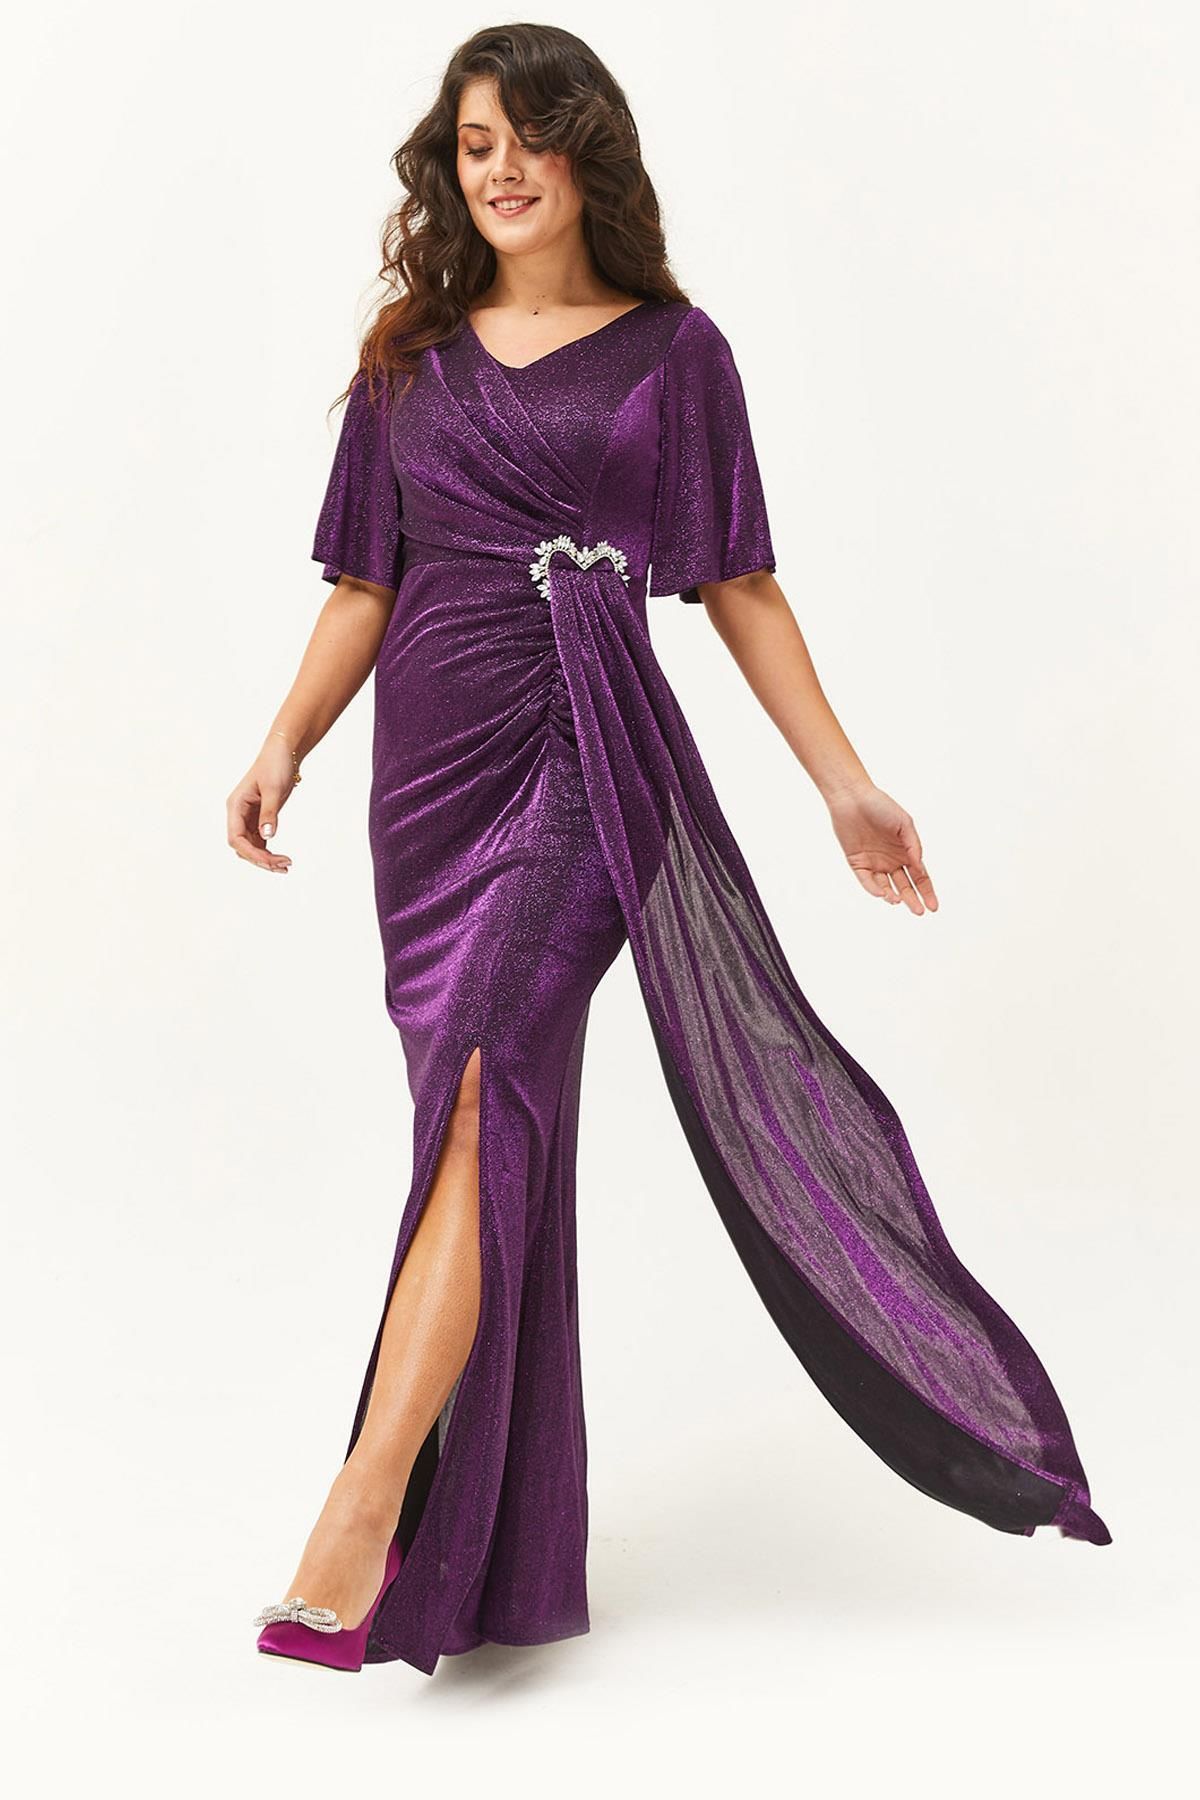 Ebsumu Kadın Büyük Beden Taşlı Toka Detaylı Uzun Mor Abiye & Gece Elbisesi